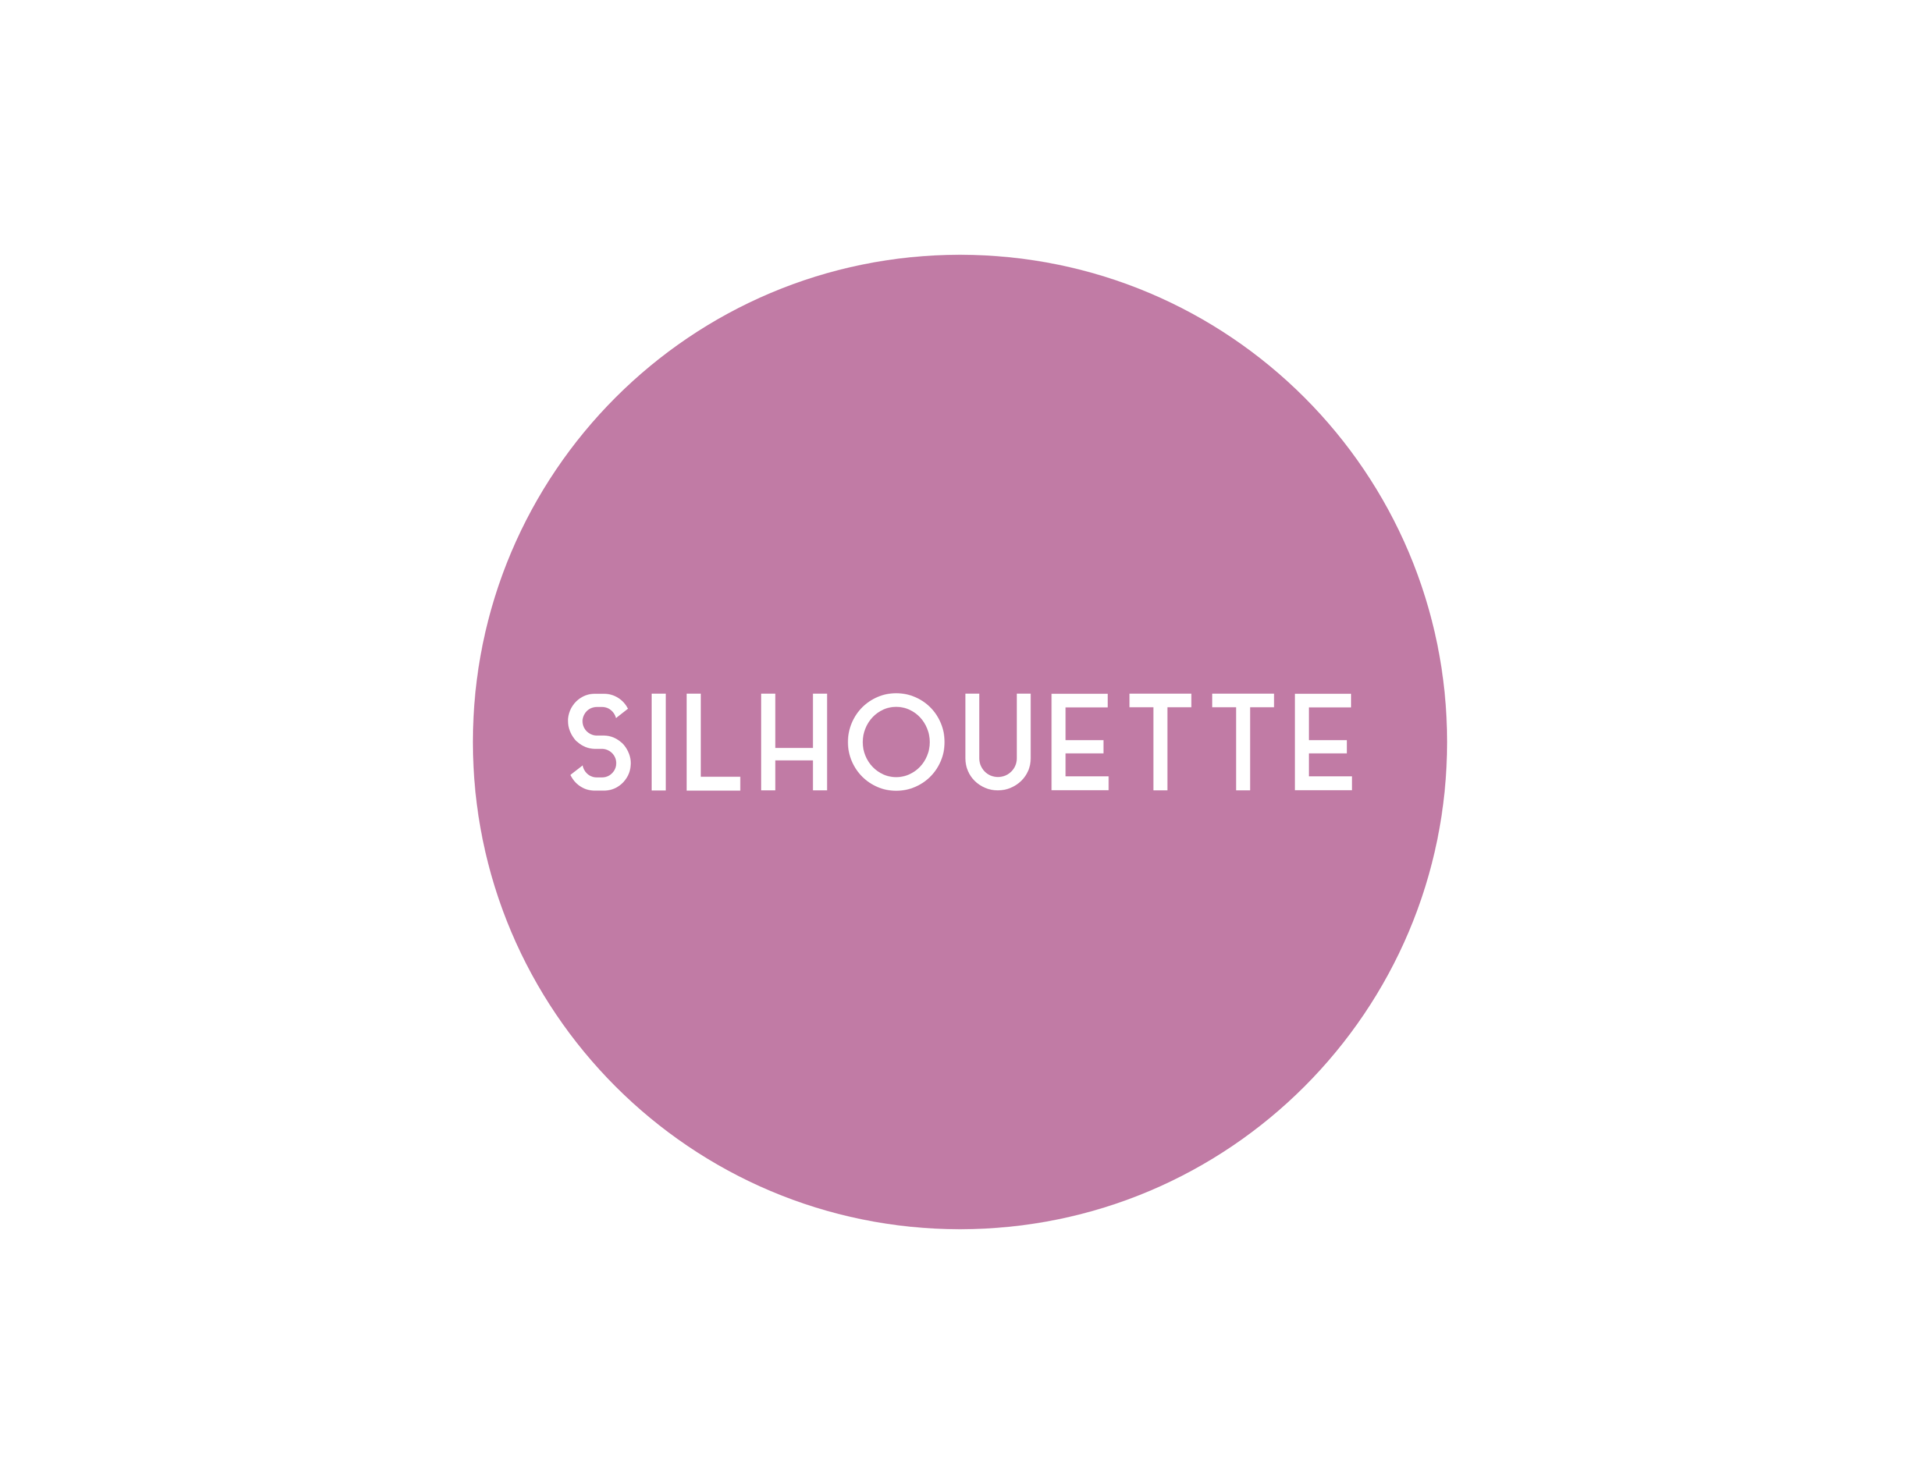 Solhouette Spa